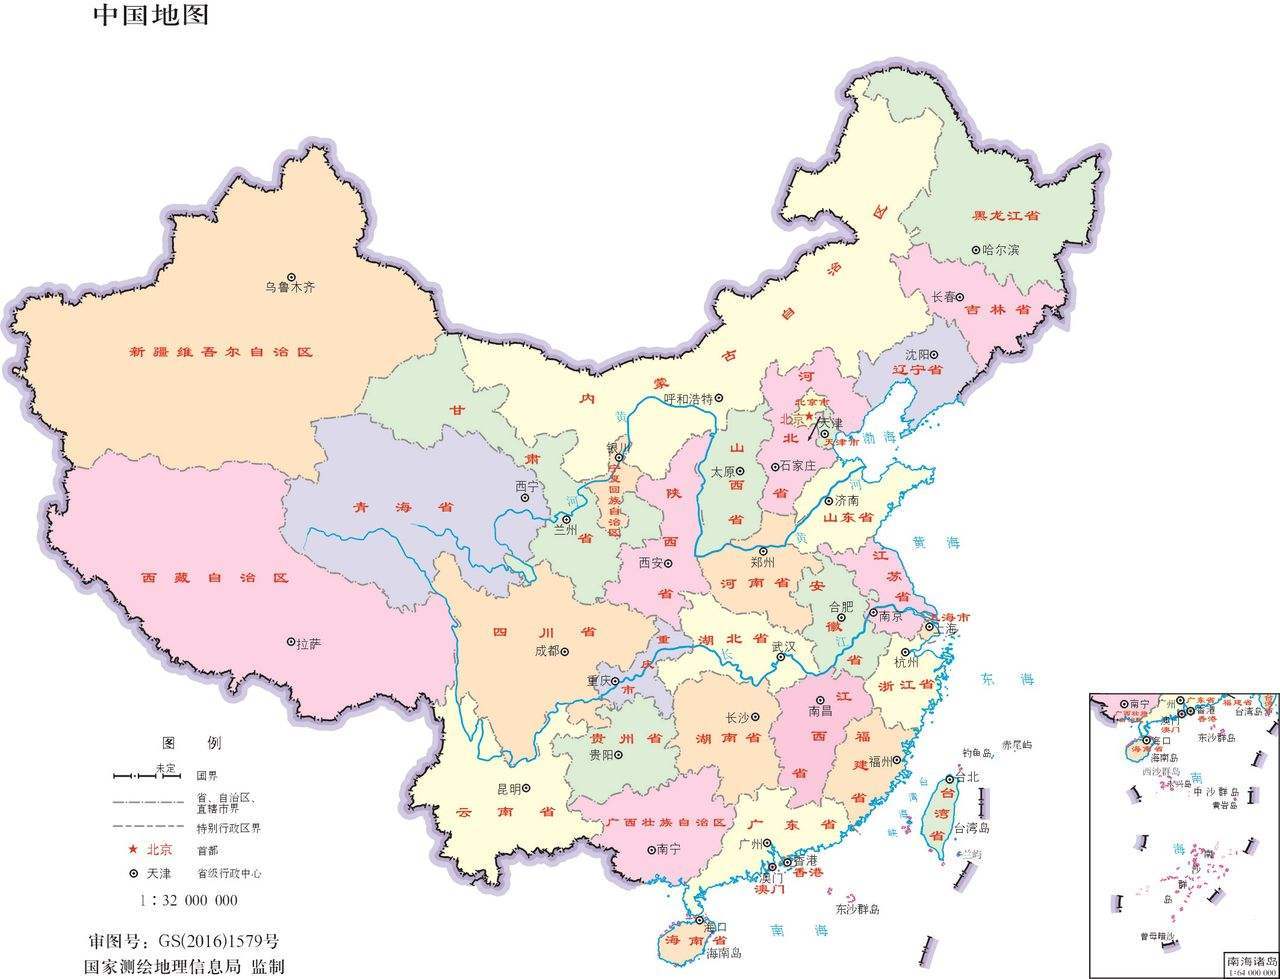 厂商挂中国地图竟然没有台湾 厂商的说法让人哭笑不得